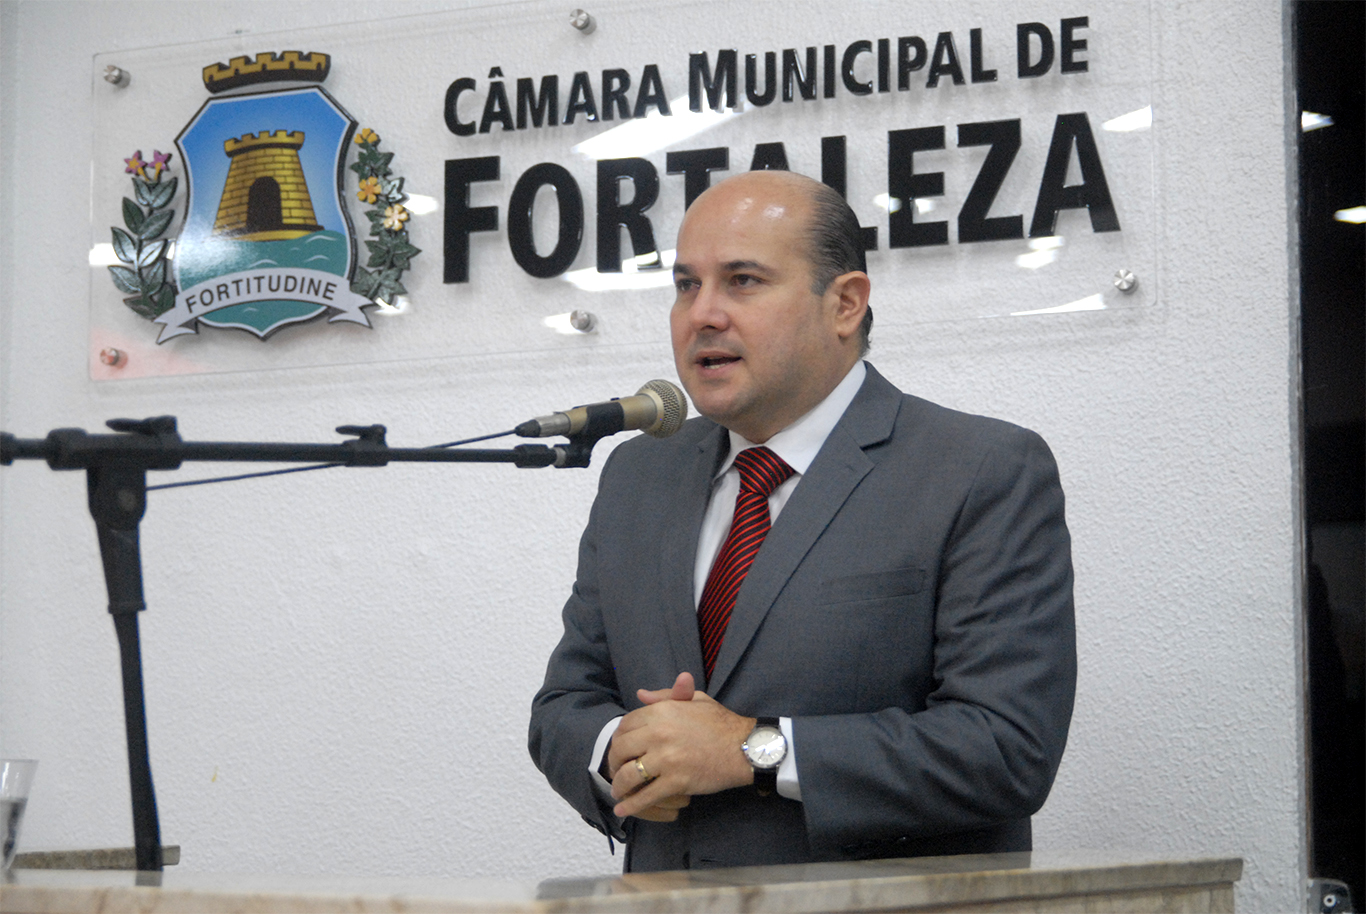 O prefeito de Fortaleza, Roberto Cláudio, prometeu uma investigação rígida sobre desabamento (foto: Genilson de Lima / Câmara Municipal de Fortaleza)